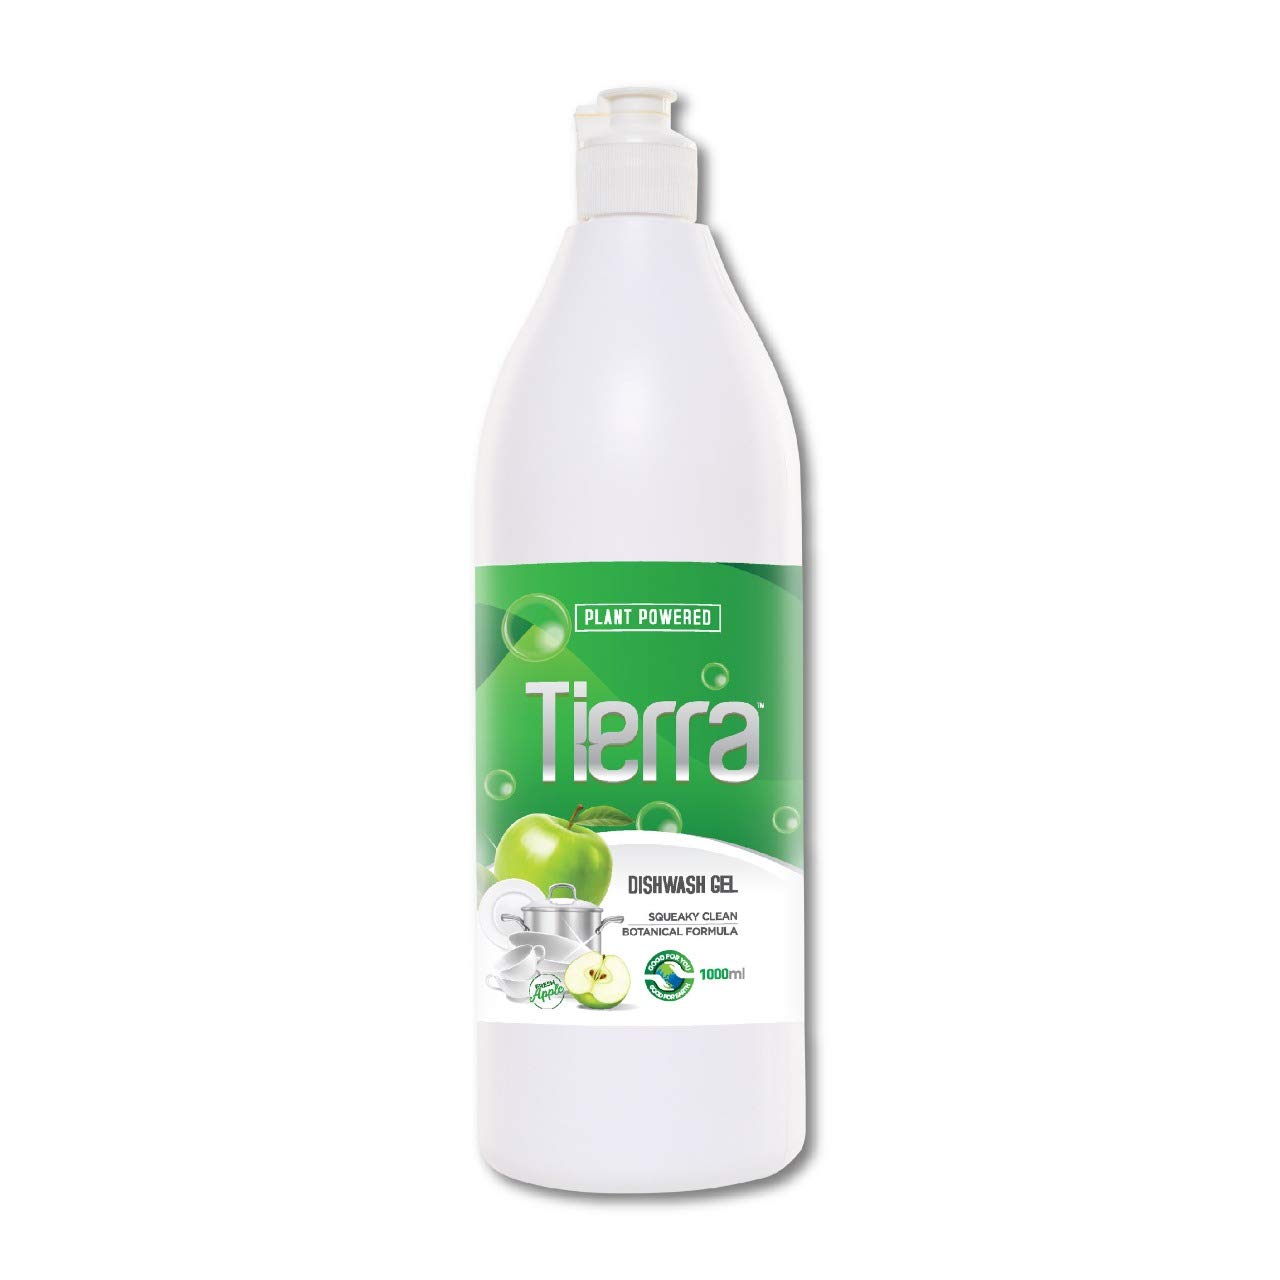 Tierra Dishwash Gel | Green Apple - 1000 mL